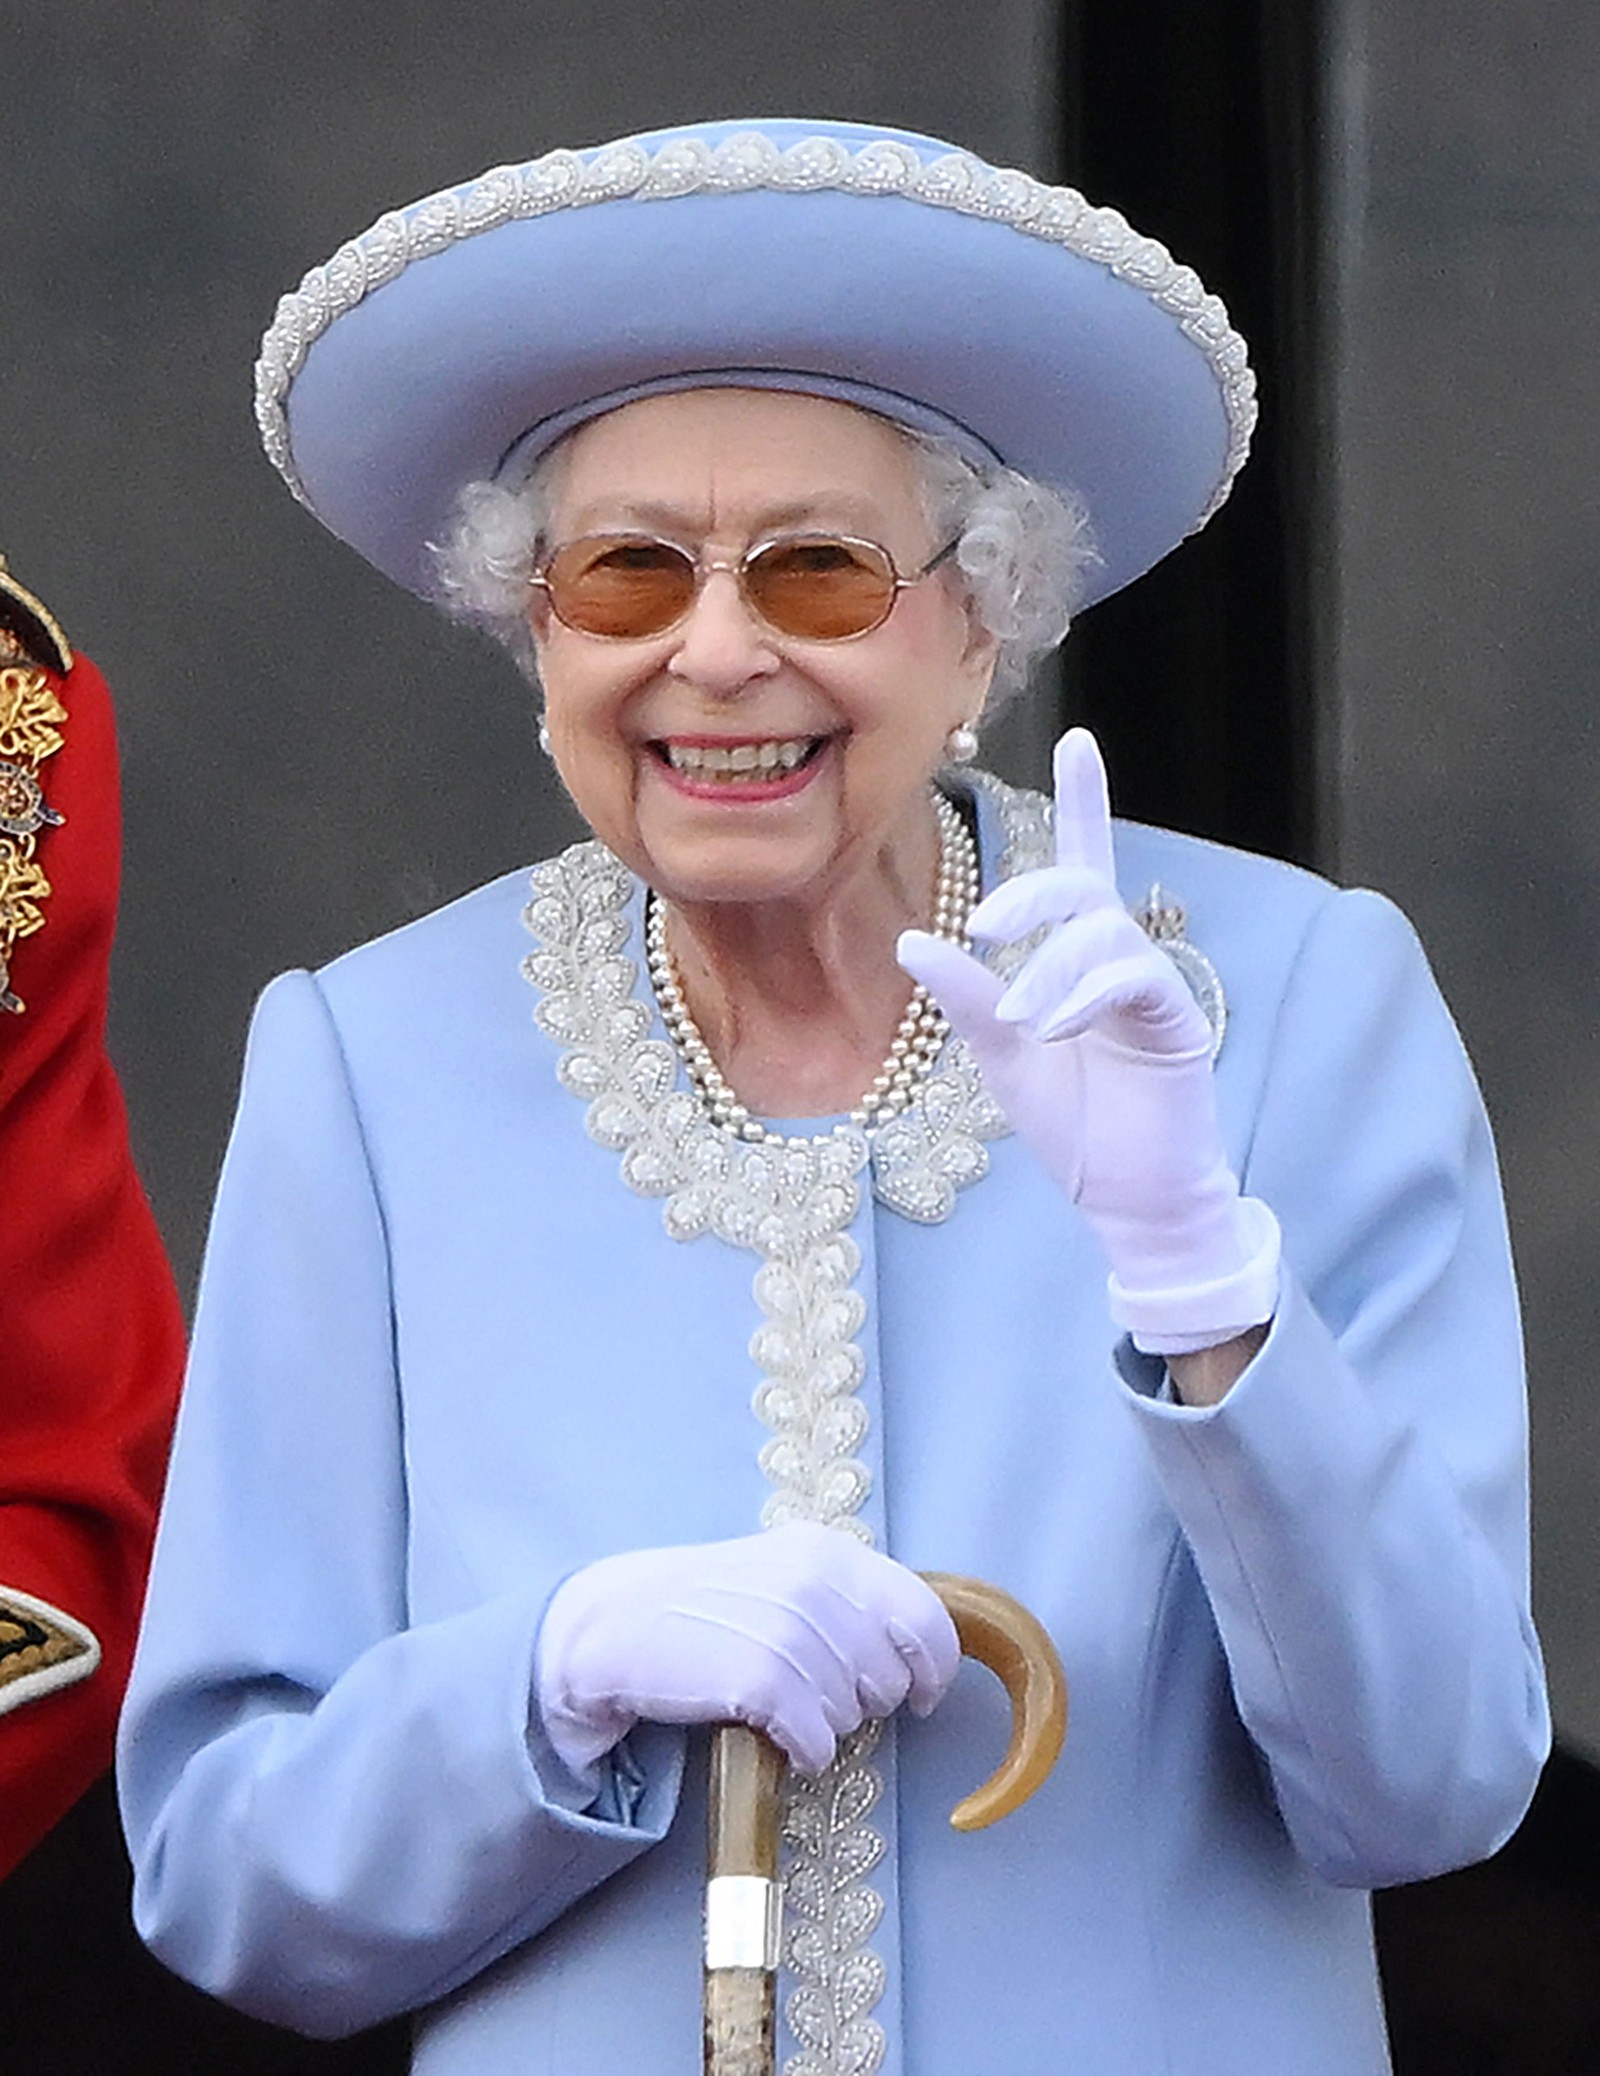 Rainha Elizabeth celebra 70 anos de reinado, o mais longo da história do Reino Unido — Foto: DANIEL LEAL / AFP